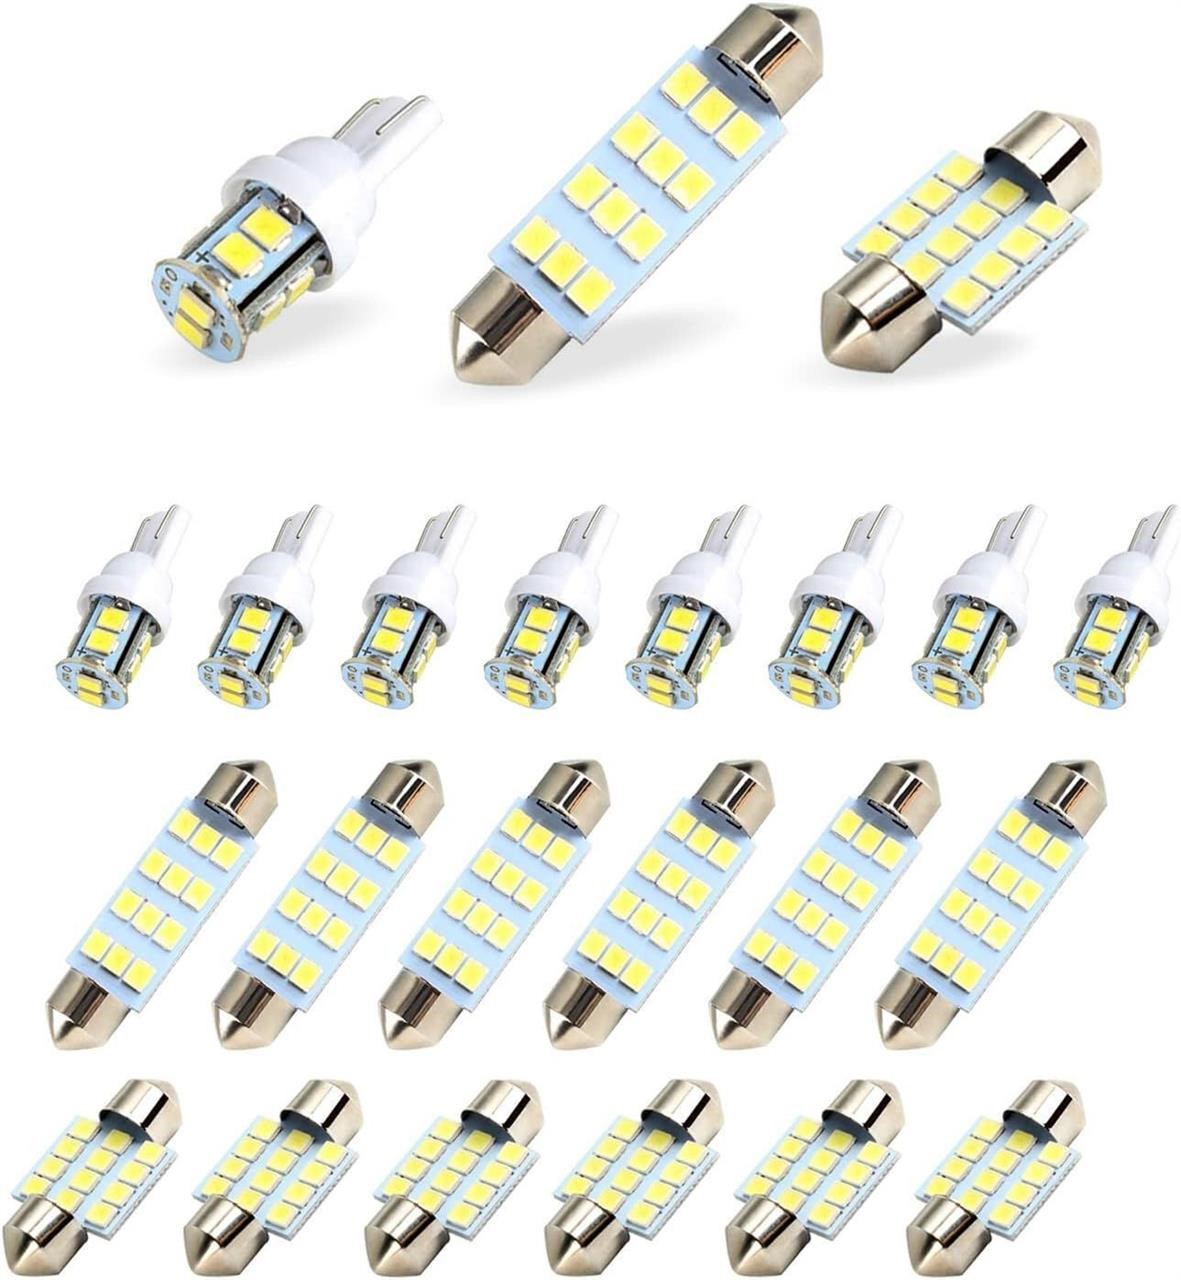 20 PCS LED Car Bulb Kit Set